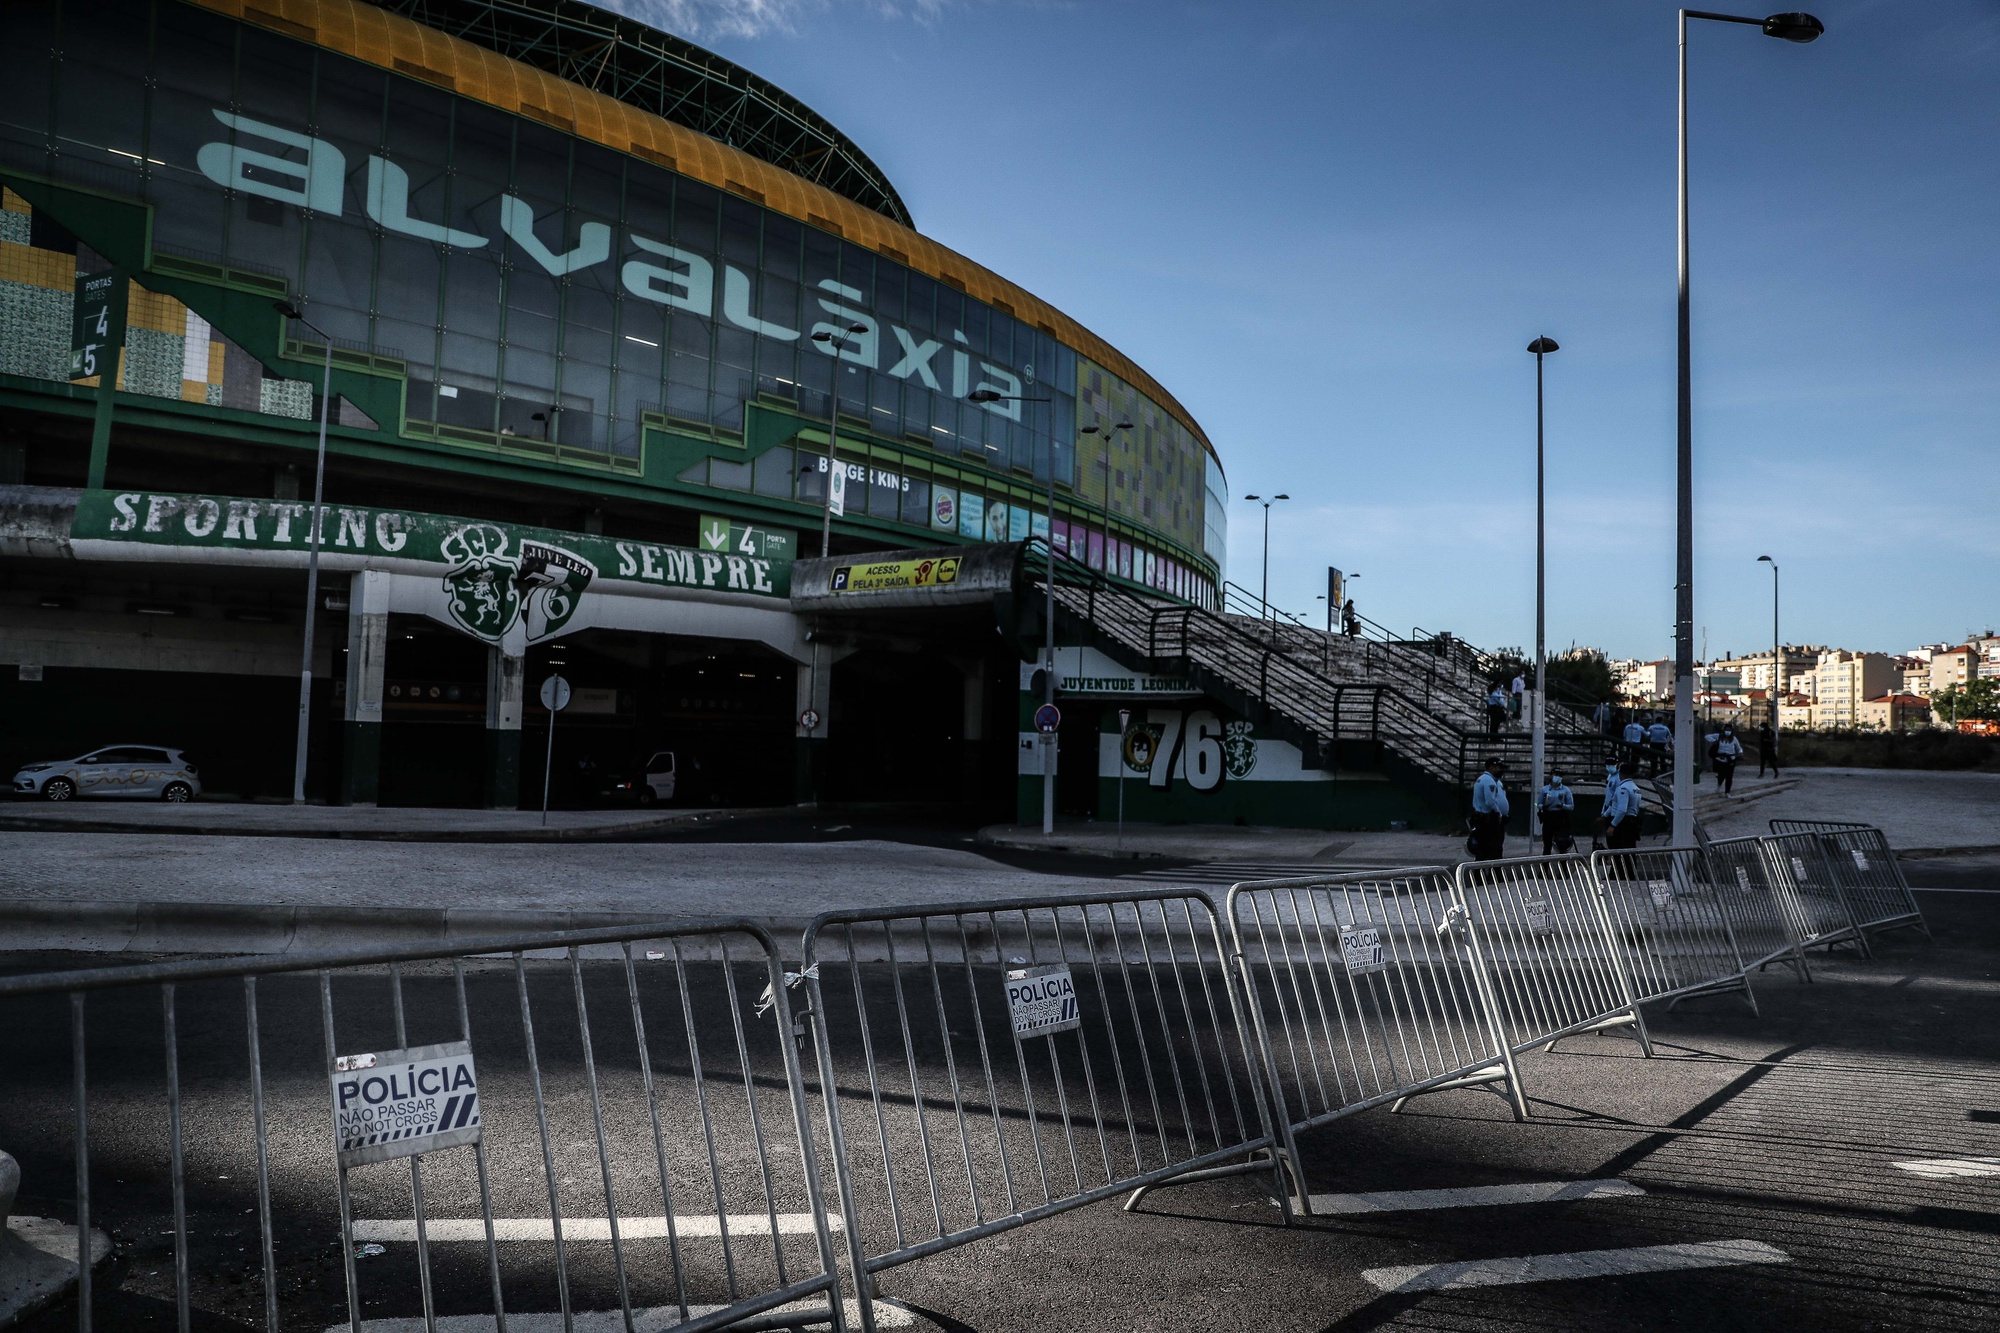 Agentes da Polícia de Segurança Pública (PSP) controlam um perímetro de segurança que envolve o Estádio José Alvalade para evitar a afluência de adeptos bem como concentrações e ajuntamentos nas imediações antes da última jornada da Primeira Liga de Futebol entre o Sporting e o Marítimo, em Lisboa, 19 de maio de 2021. MÁRIO CRUZ/LUSA